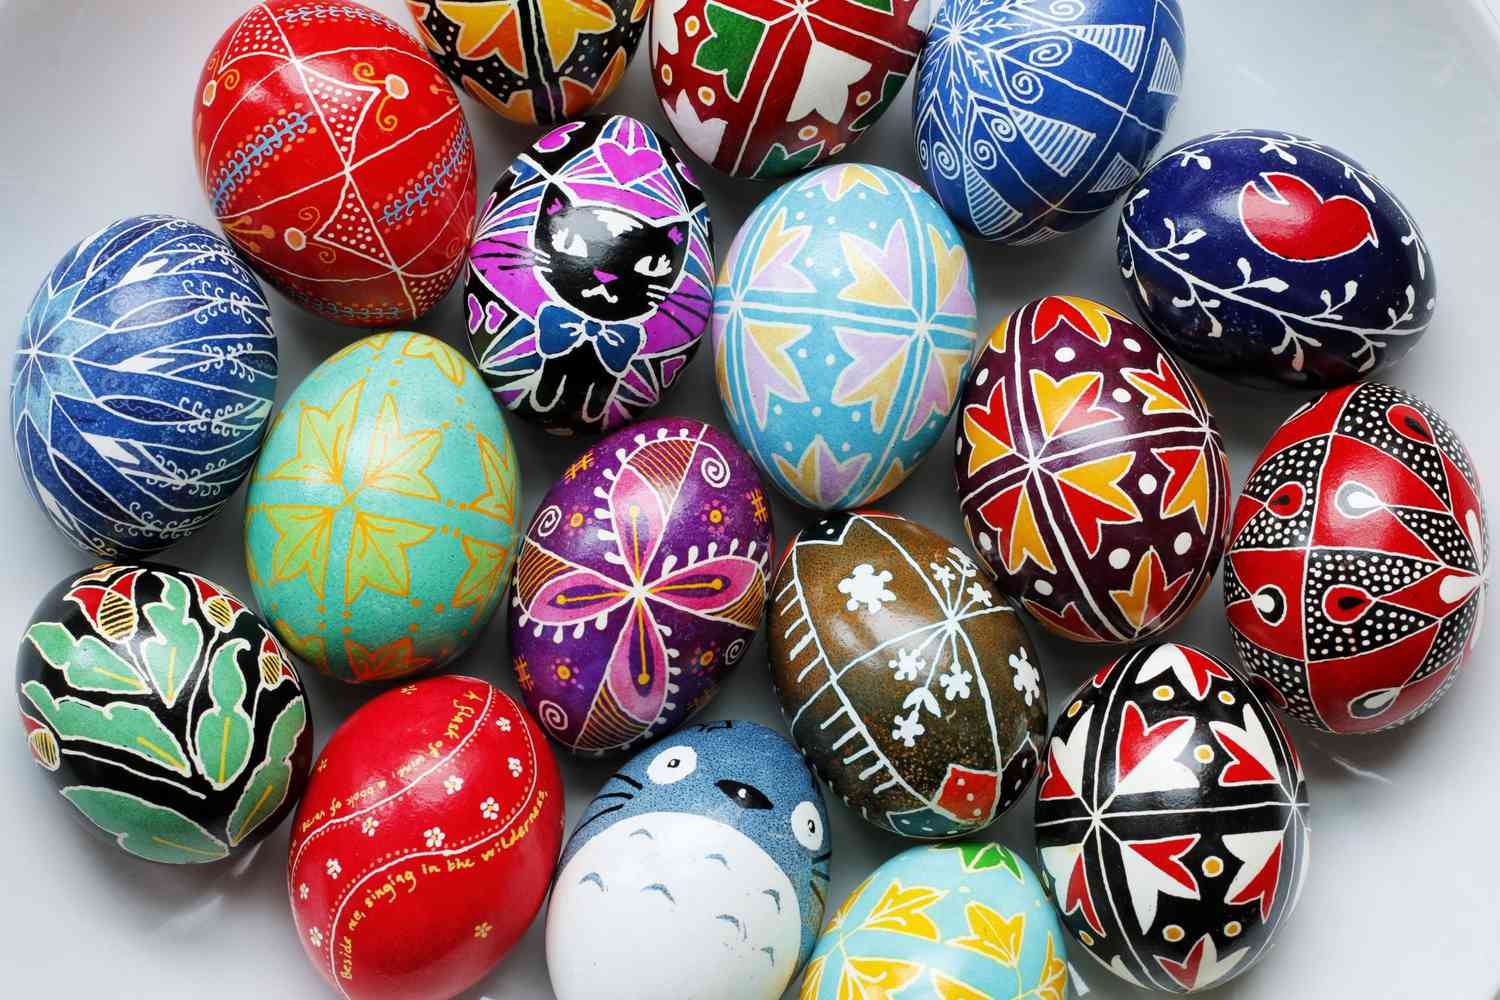 handmade pysanky ukrainian dyed easter eggs in various designs